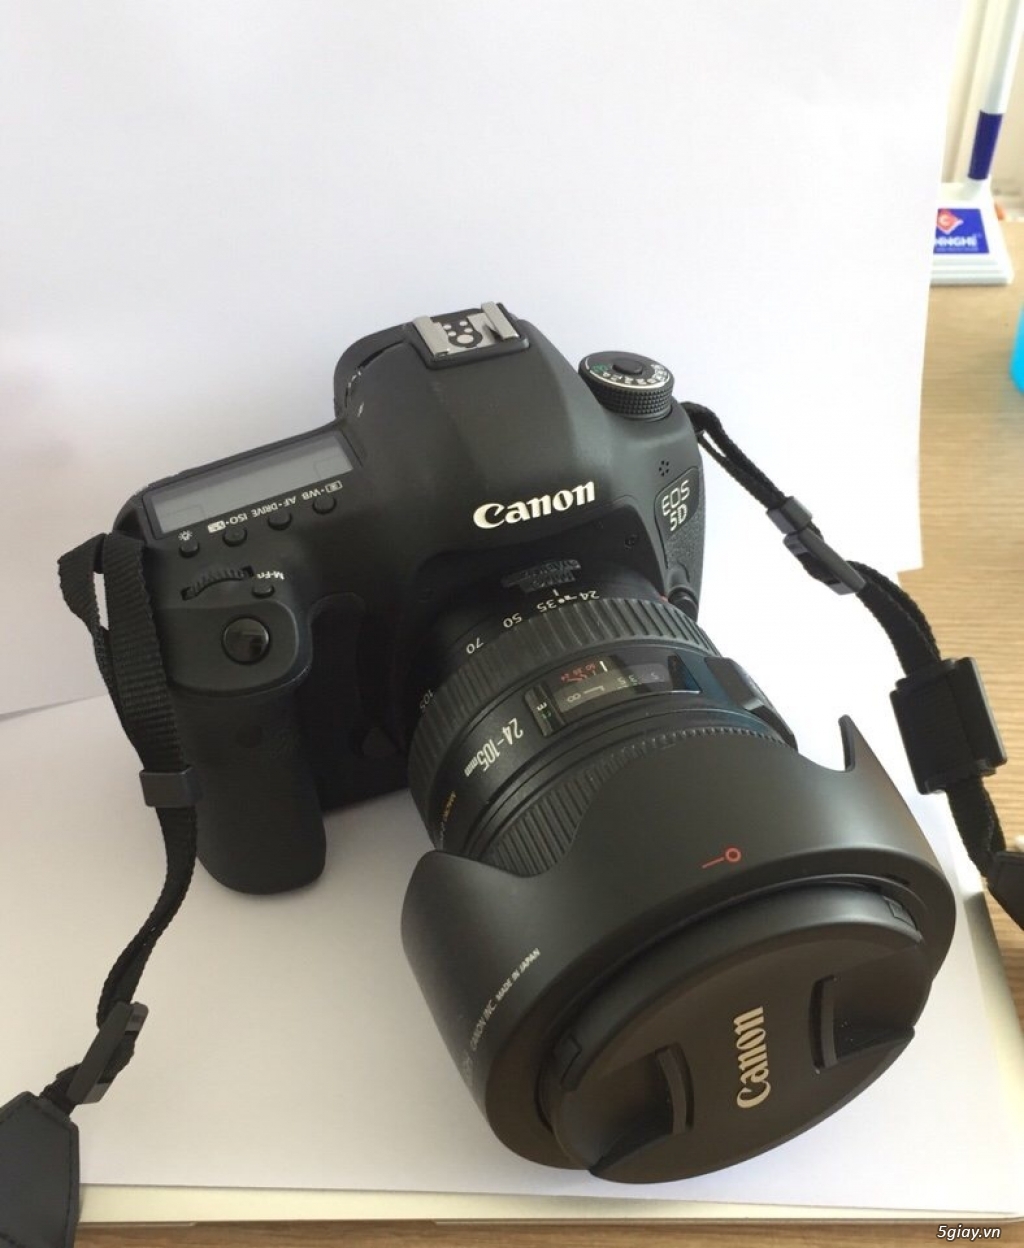 body Canon EOS 5D mark III + Lens EF 24-105mm. (còn hạn bảo hành chính - 1